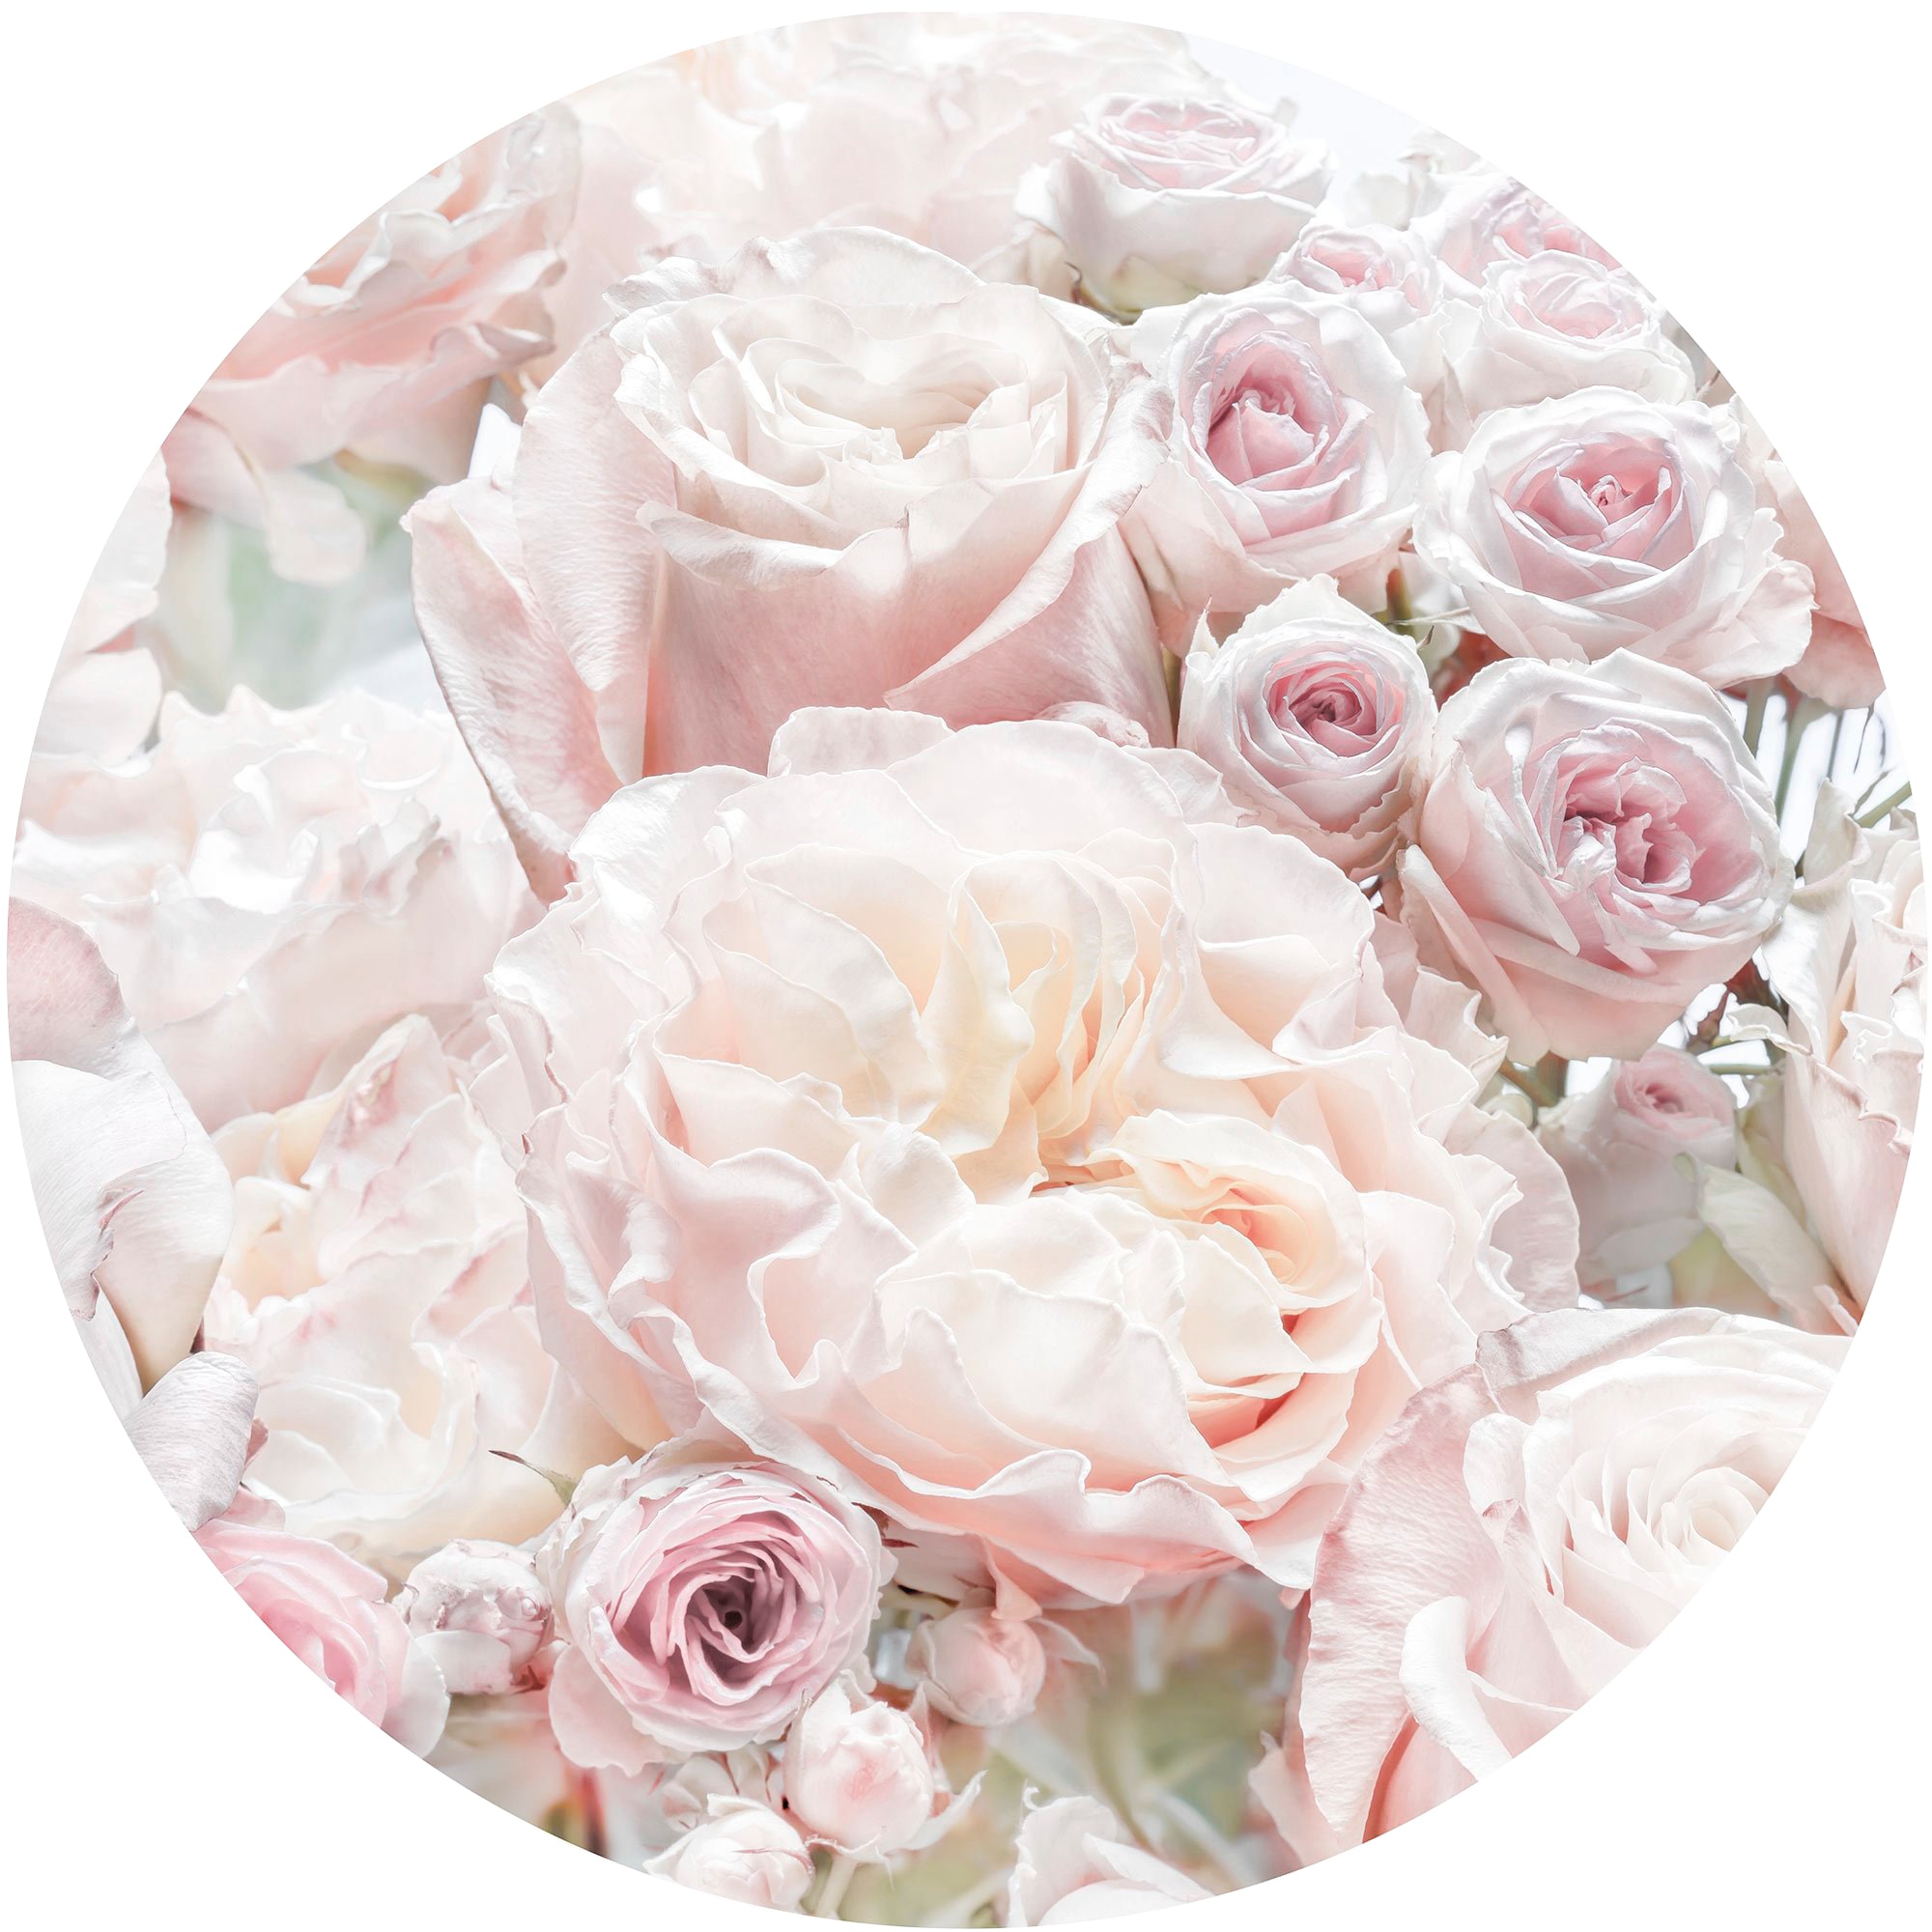 Fototapete »Pink and Cream Roses«, 125x125 cm (Breite x Höhe), rund und selbstklebend